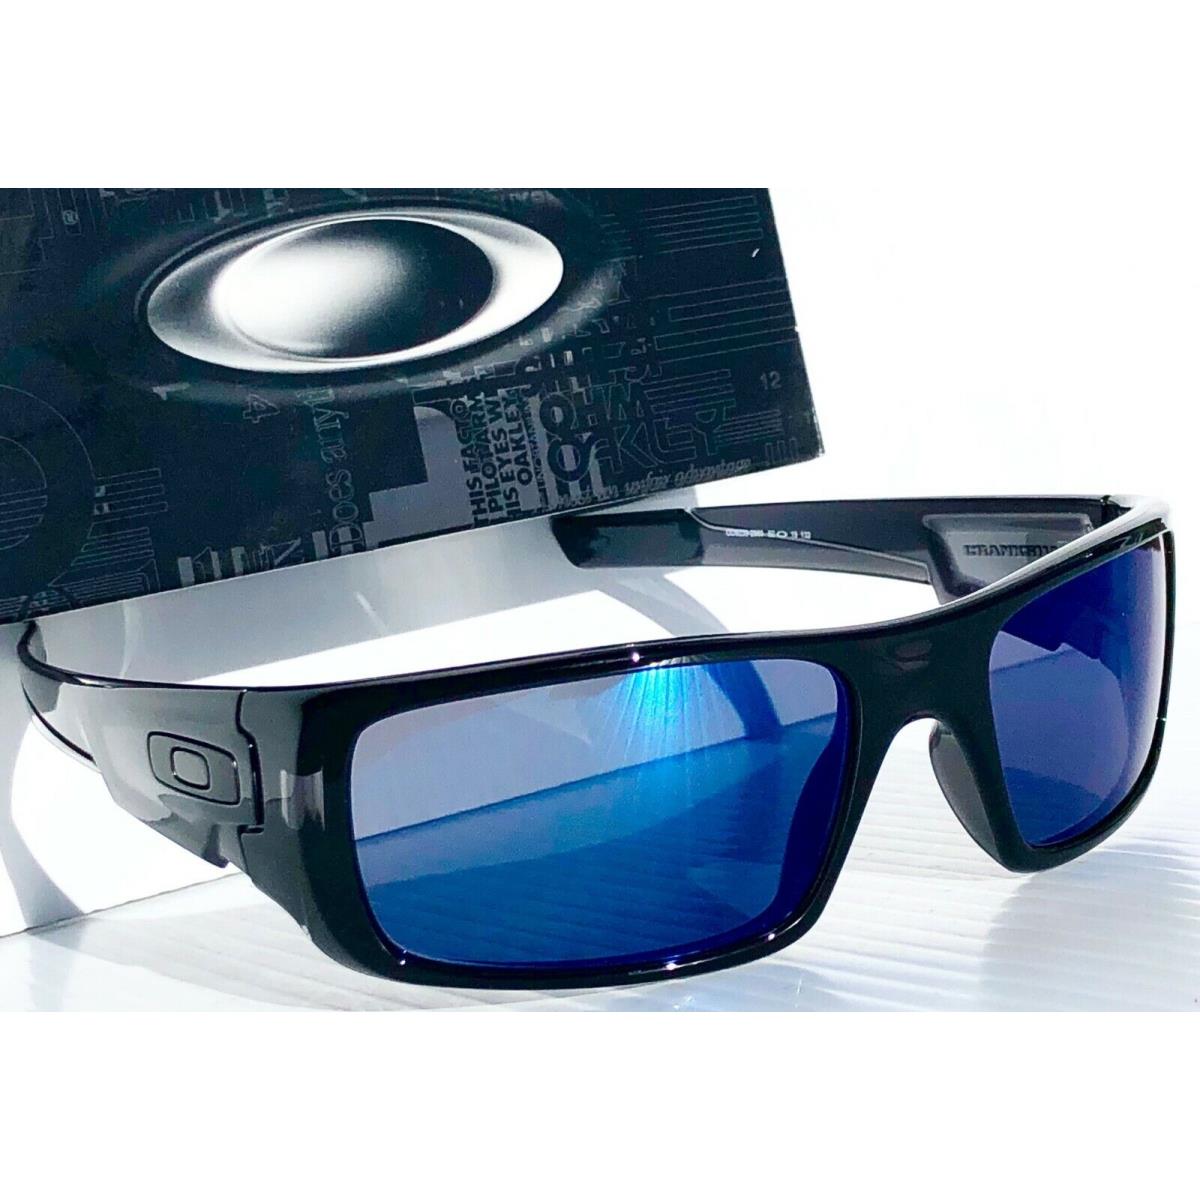 Oakley sunglasses Crankshaft - Black Smoke Crystal Ink Frame, Blue Lens 6